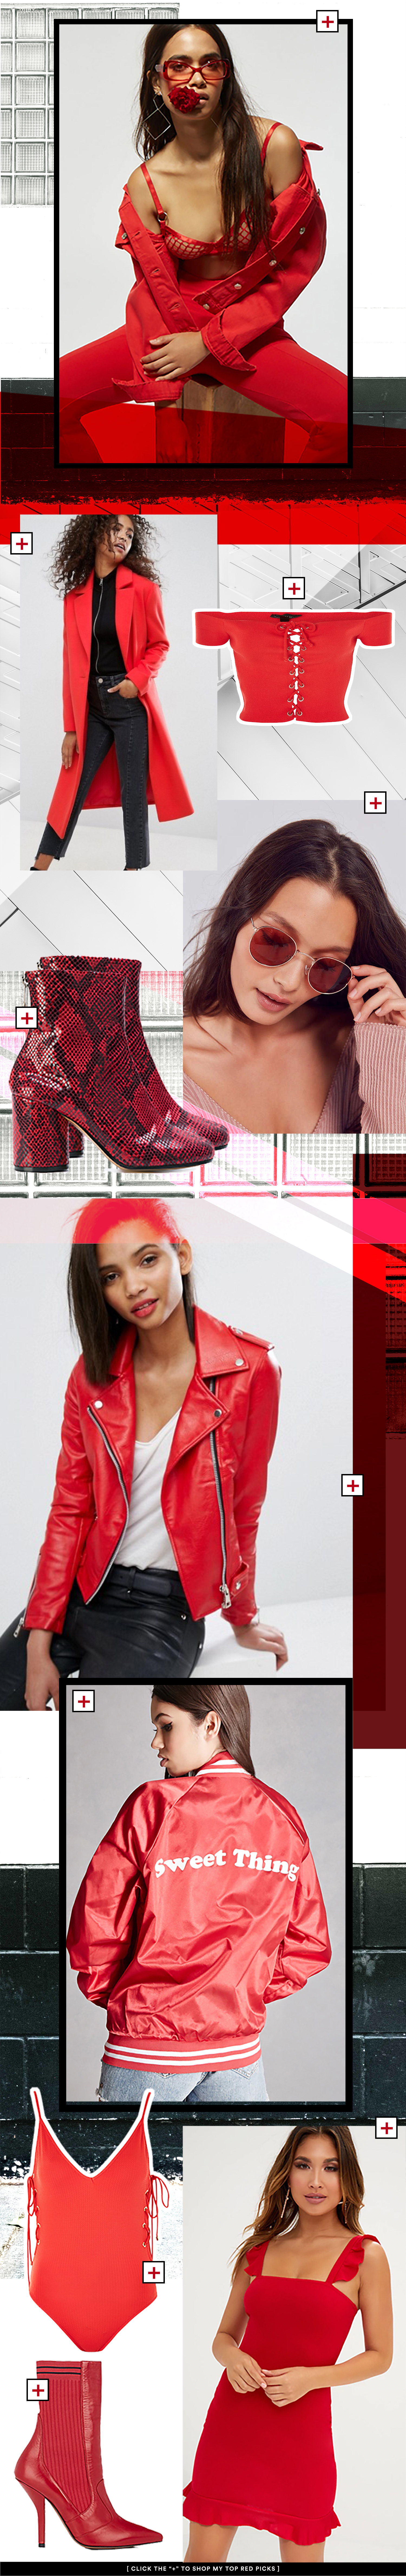 Hosttest red fashion trend pieces